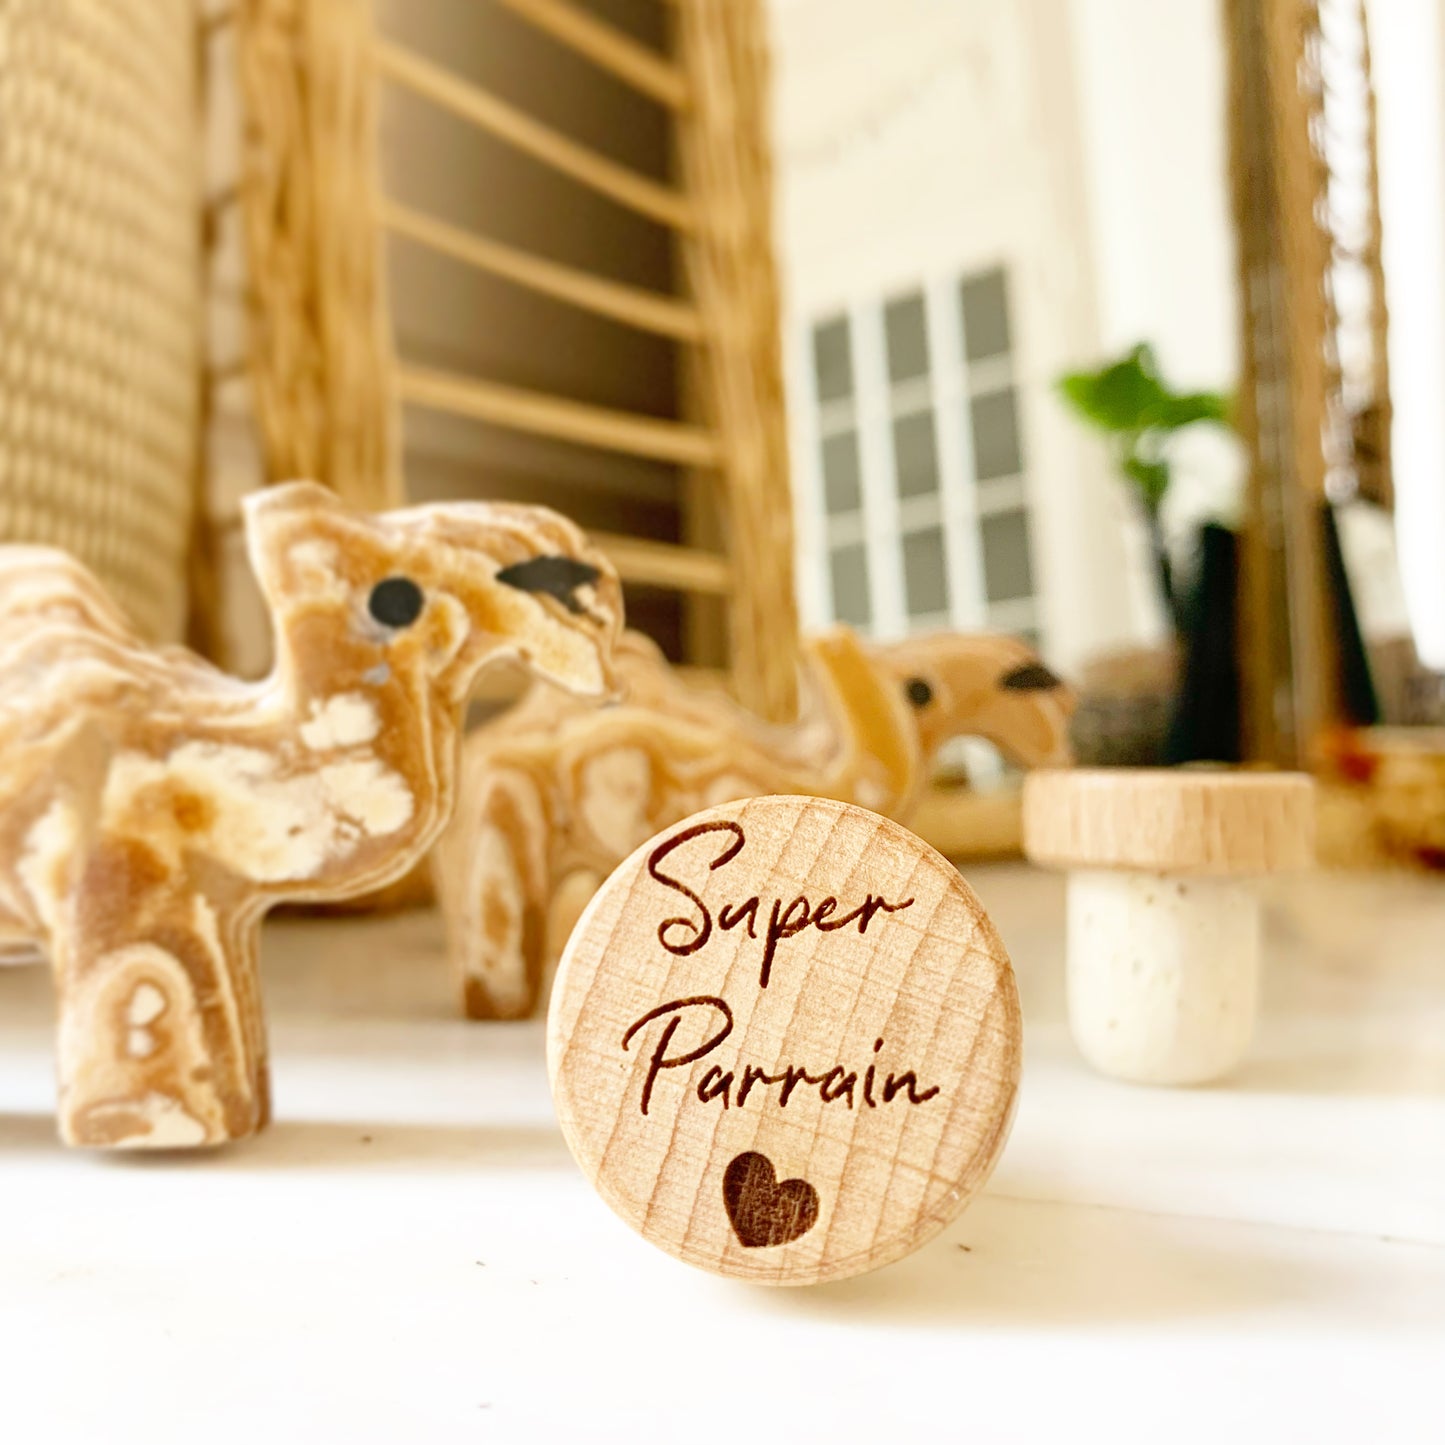 WINE STOPPER "SUPER PARRAIN"